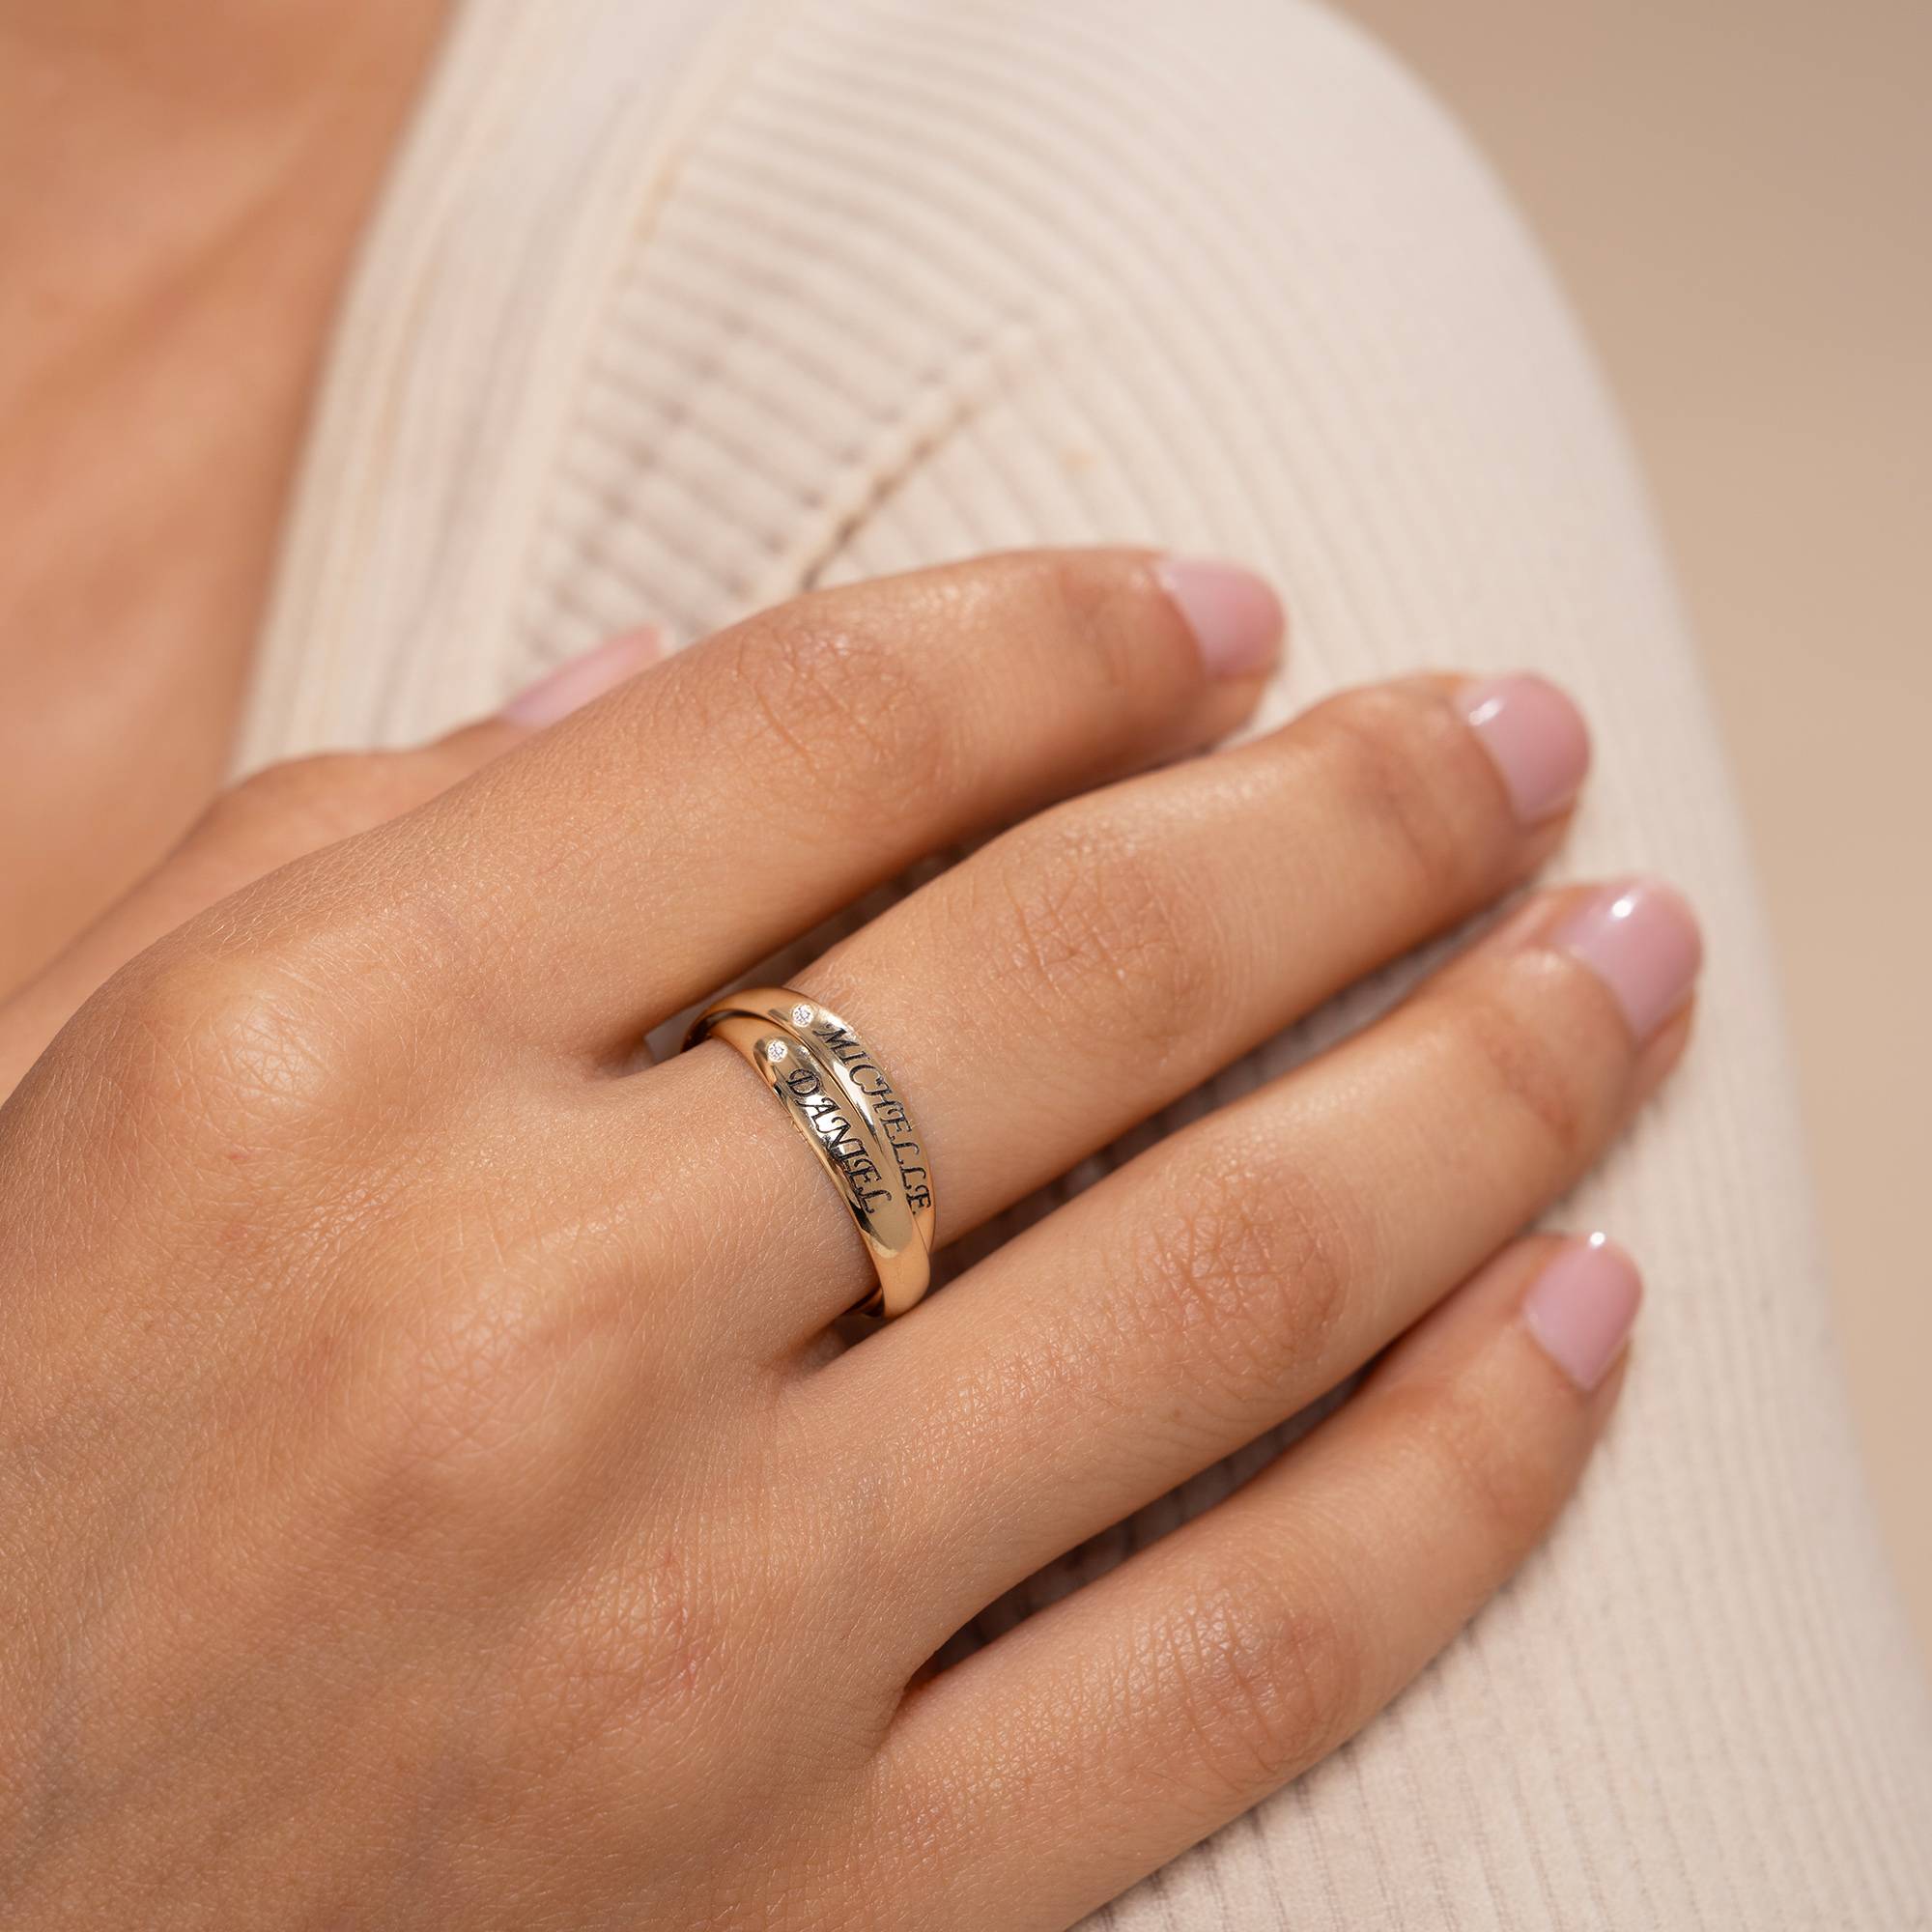 Charlize Russische Ring in 10k Goud met Diamanten-2 Productfoto